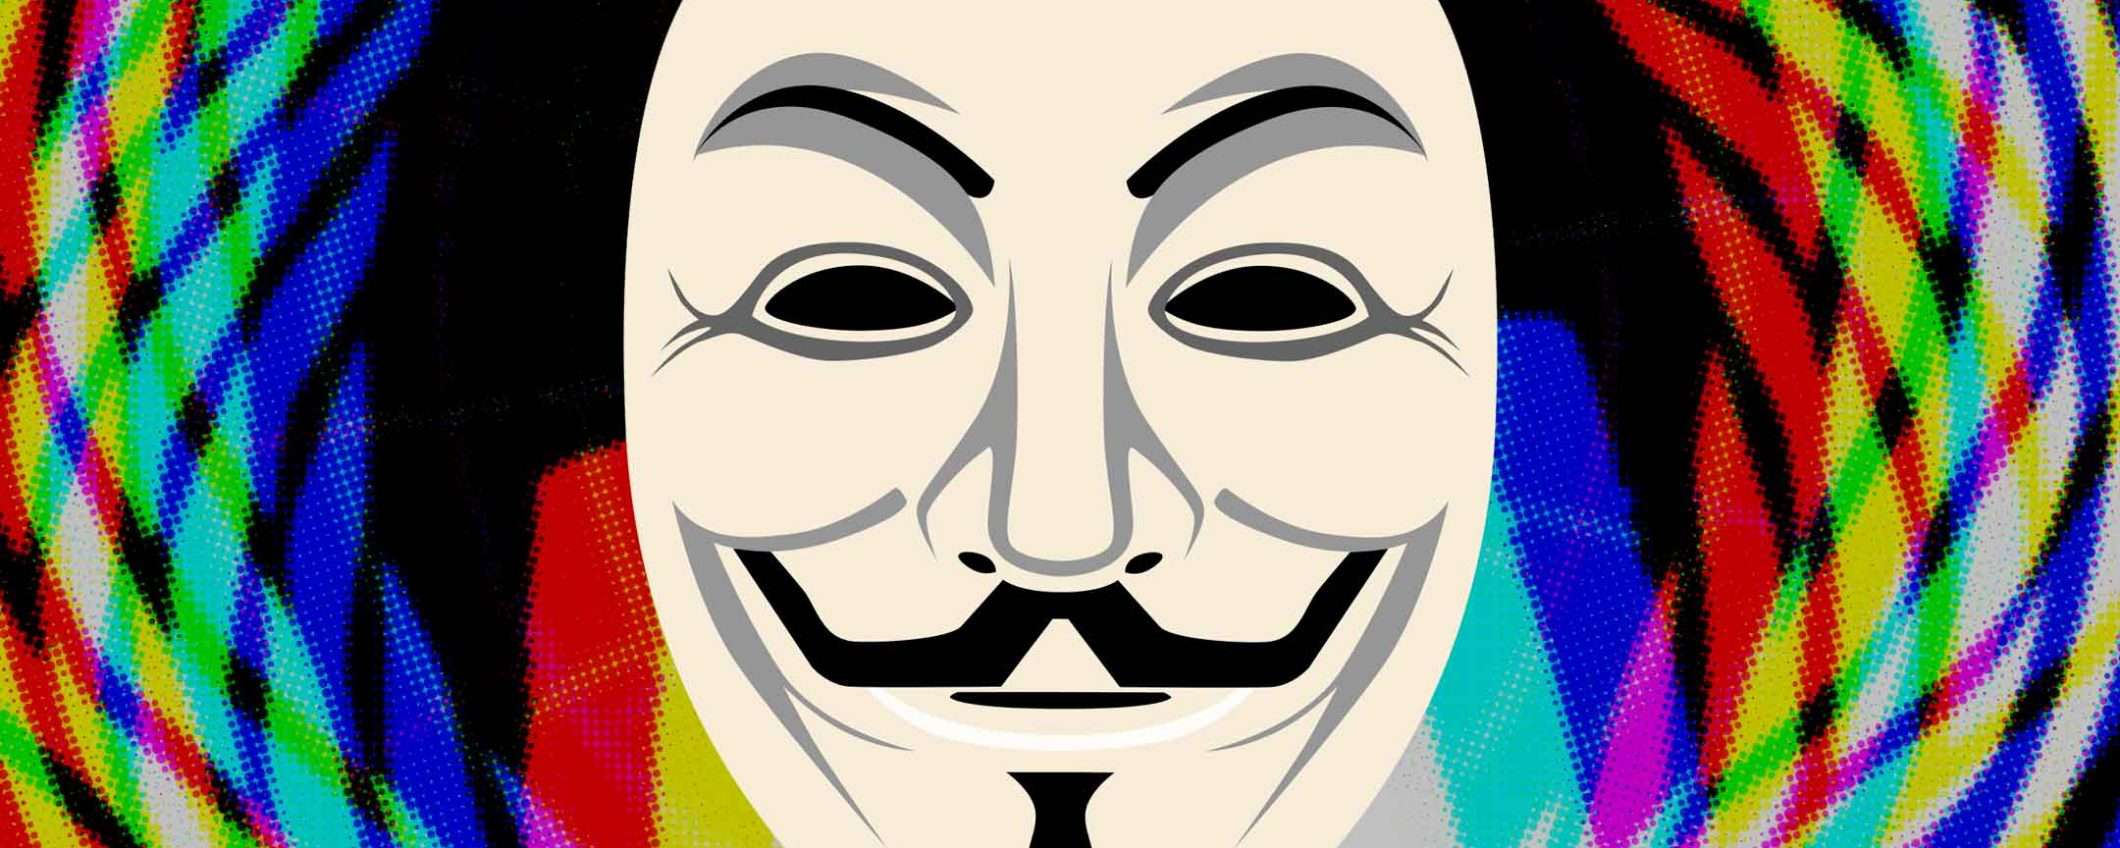 Da Anonymous 75 milioni in Bitcoin per la privacy?